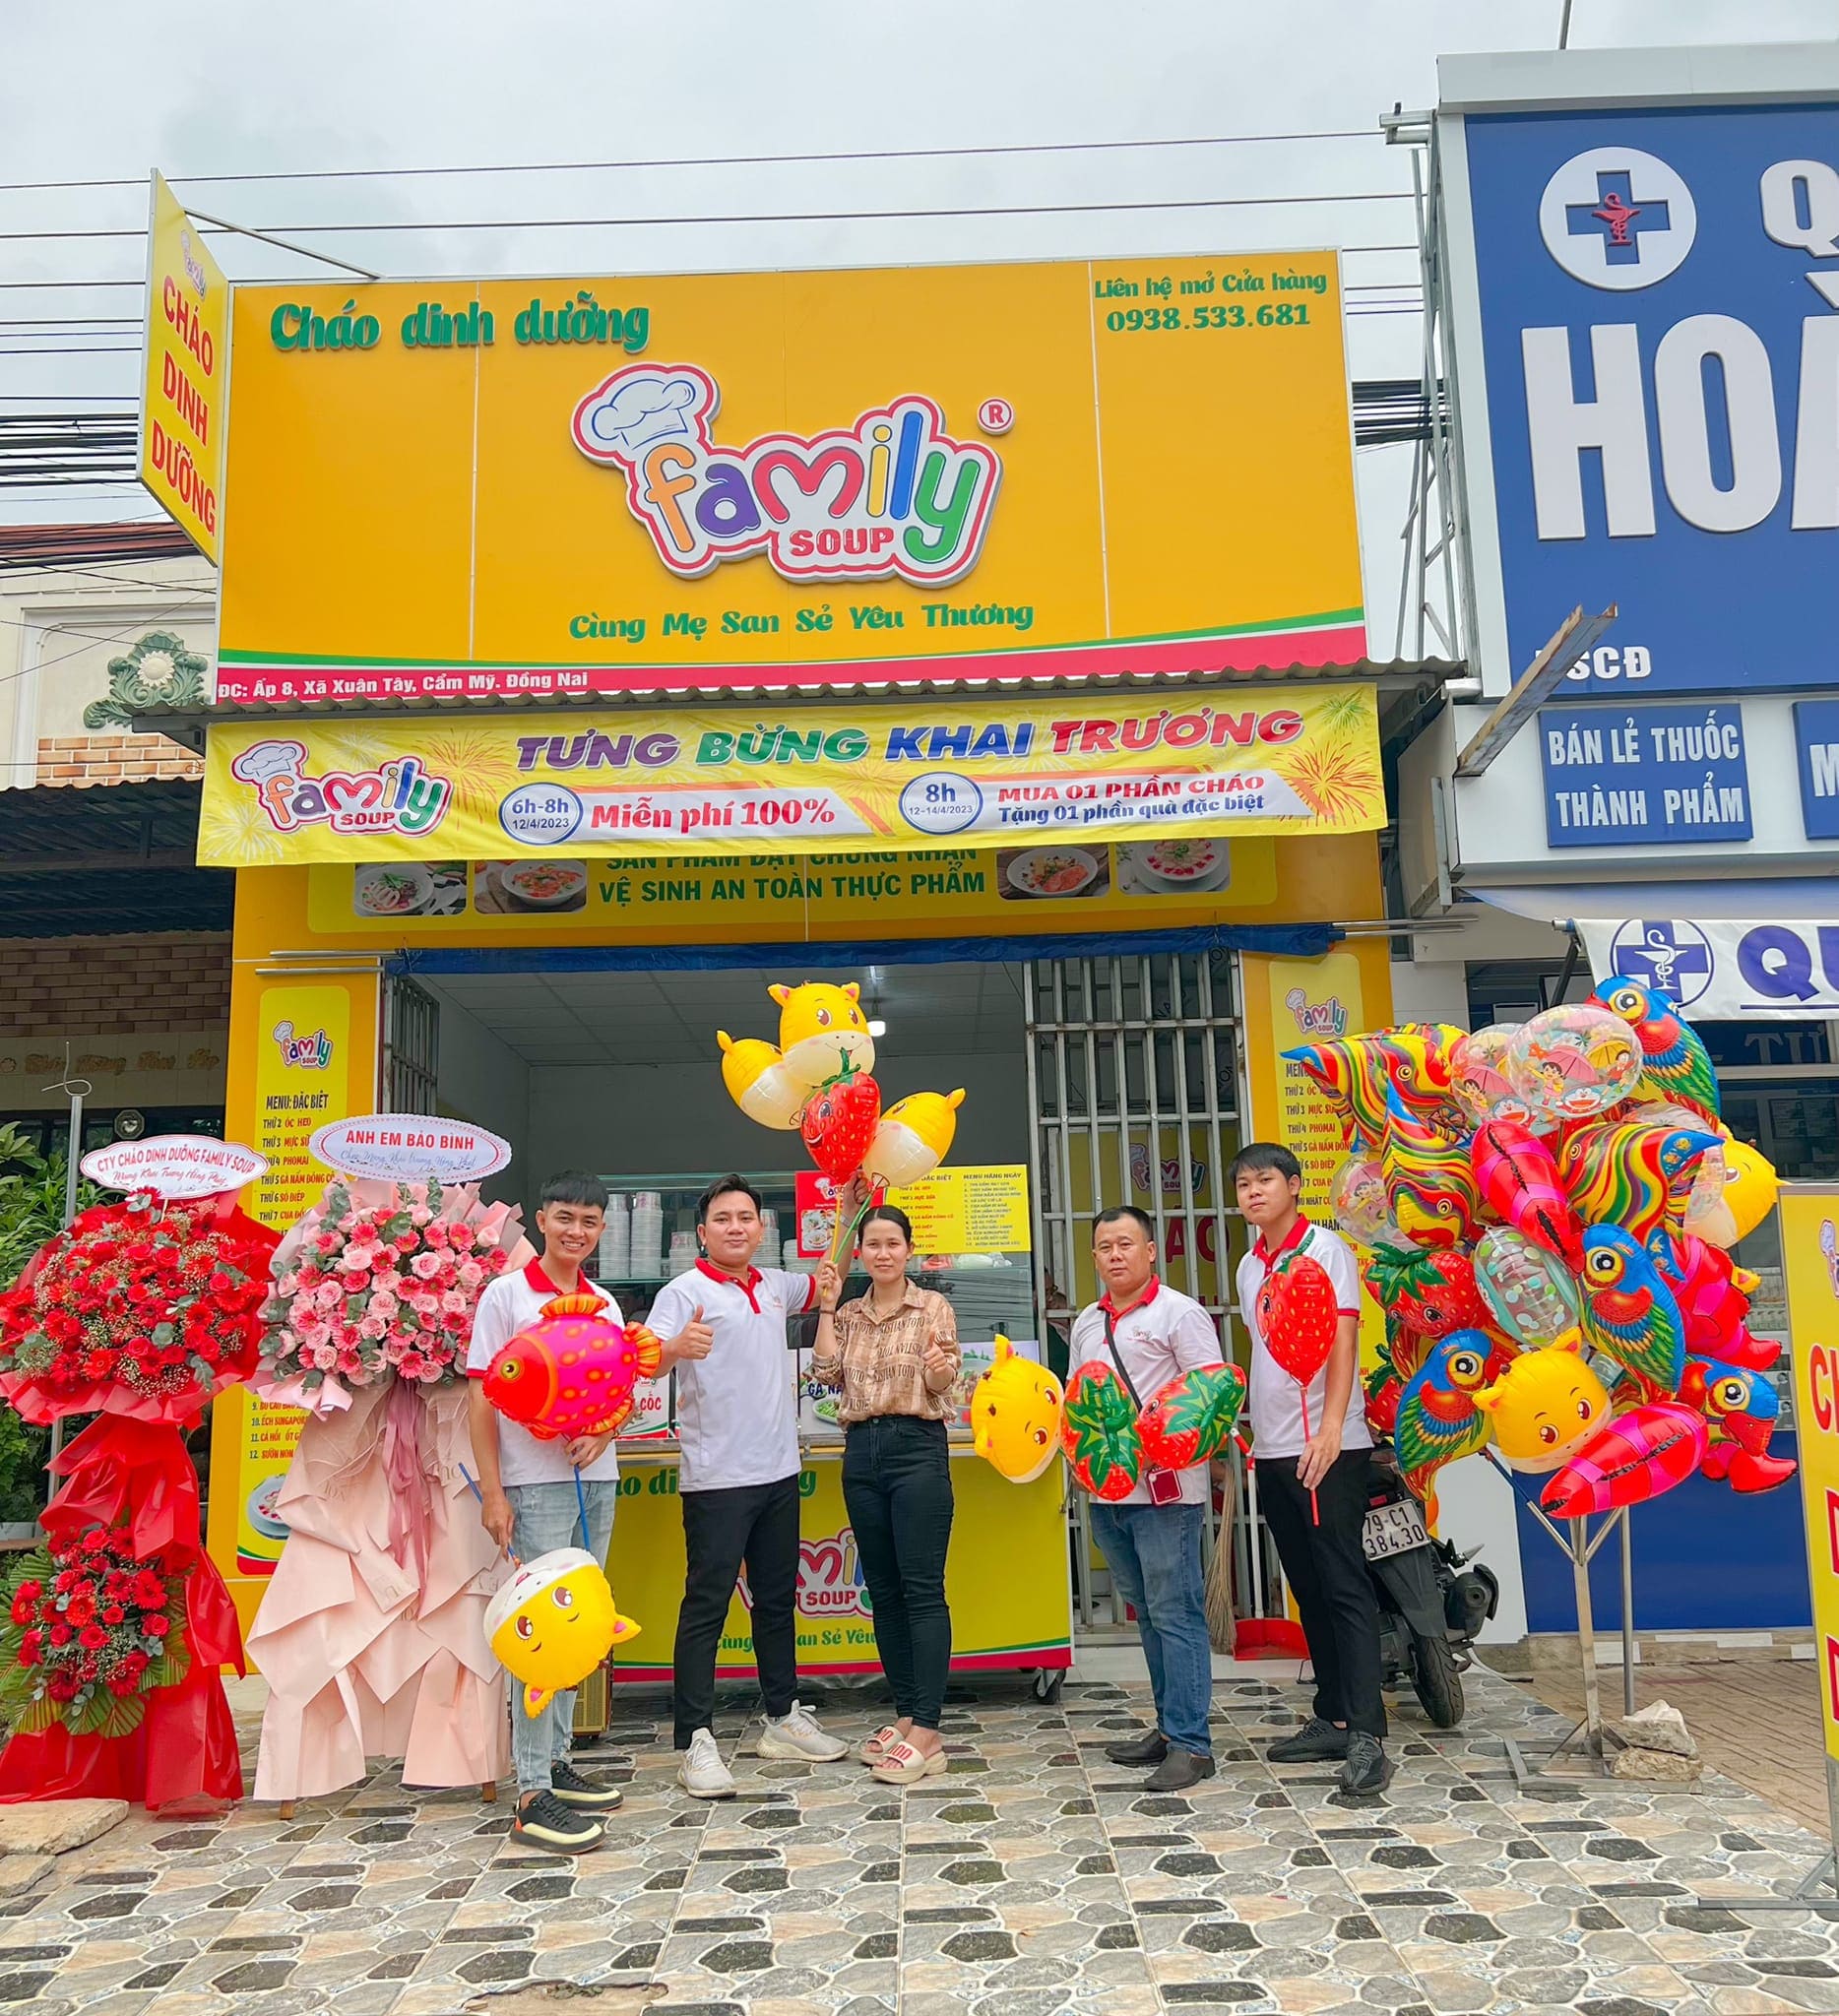 cửa hàng bán cháo dinh dưỡng family soup tại Nha Trang